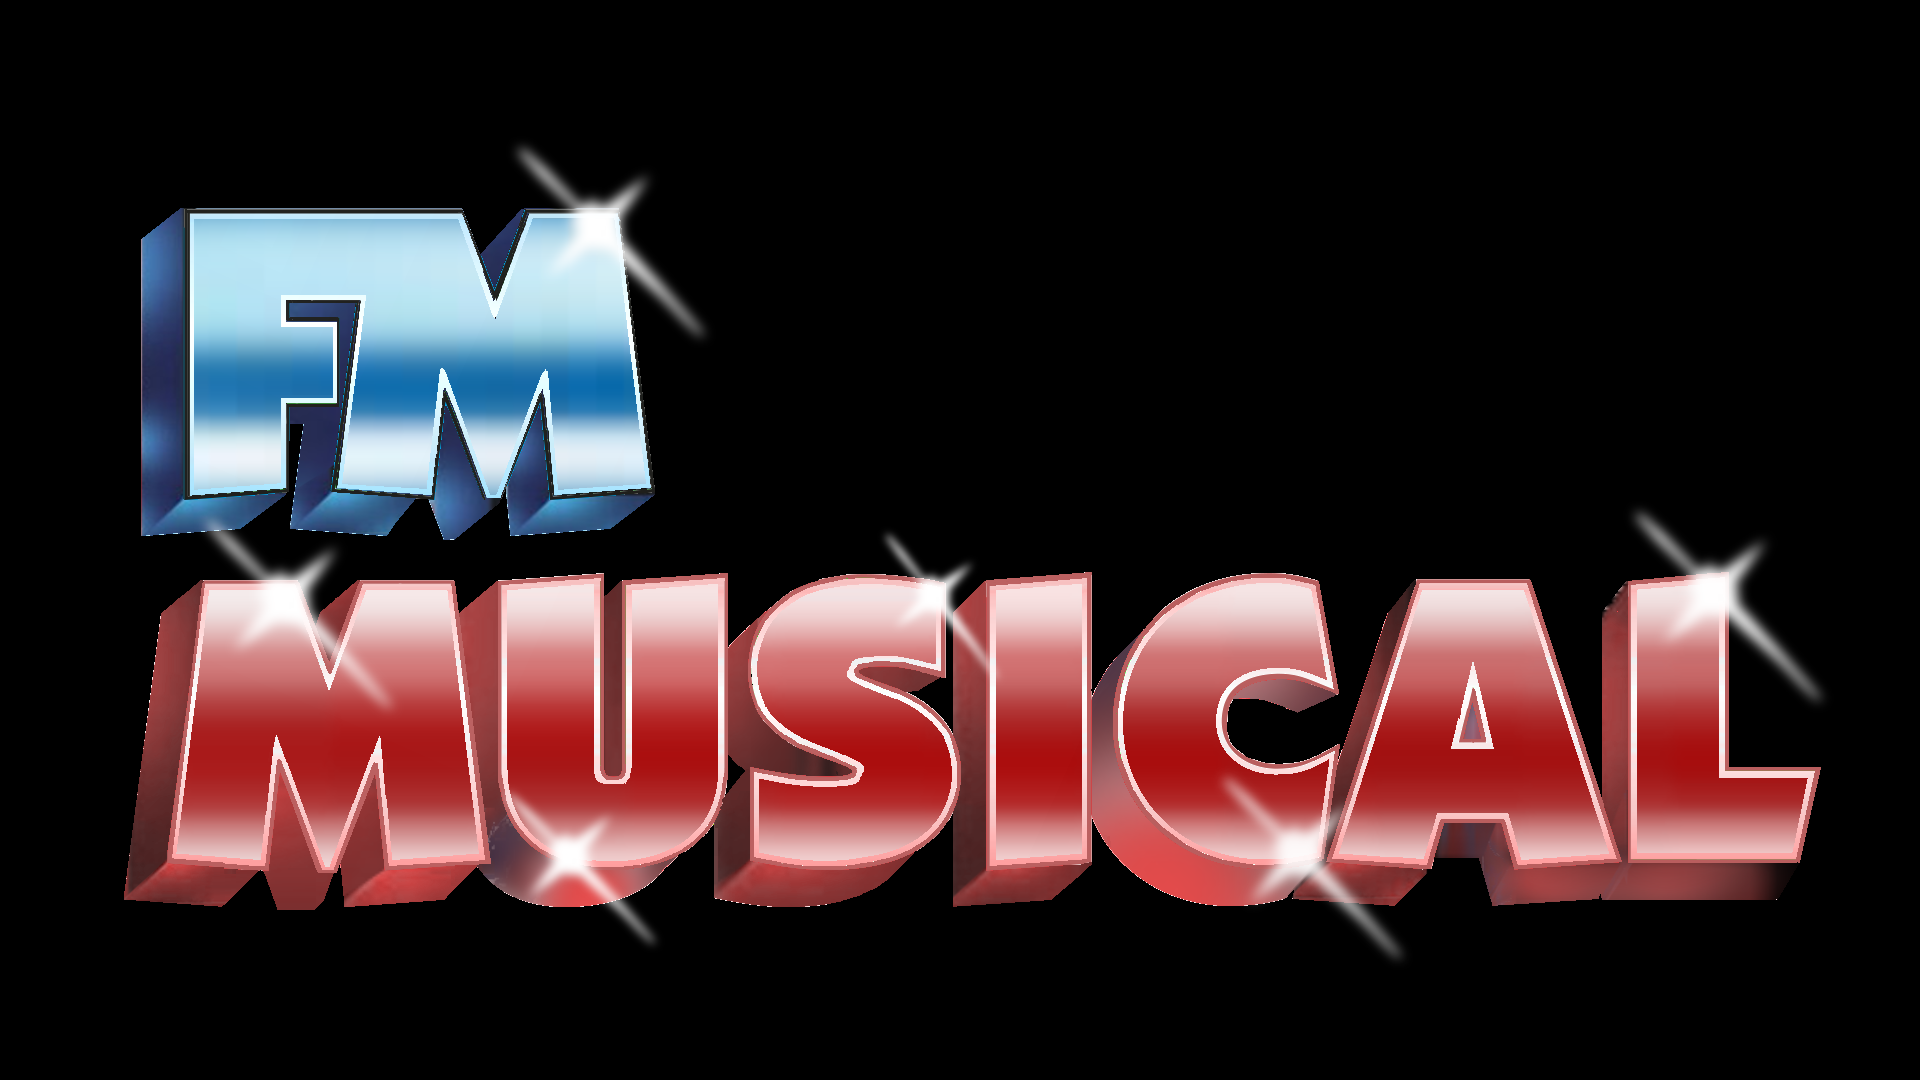 FM Musical, Mágicamente Especial